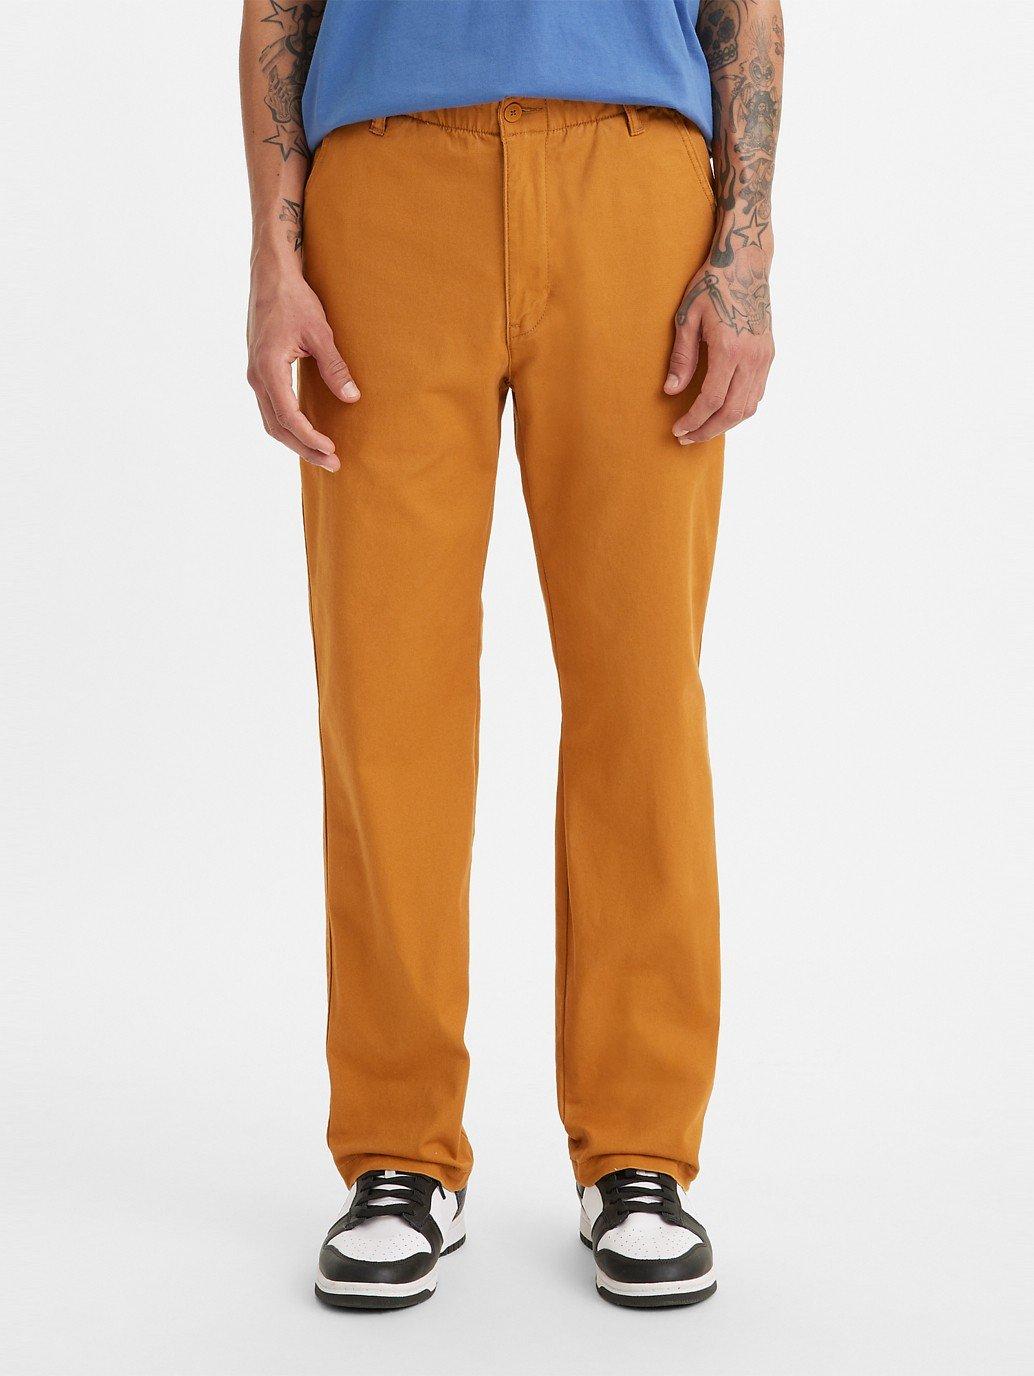 Buy Levi's® Men's XX Chino EZ-Waist Taper Pants | Levi’s® Official ...